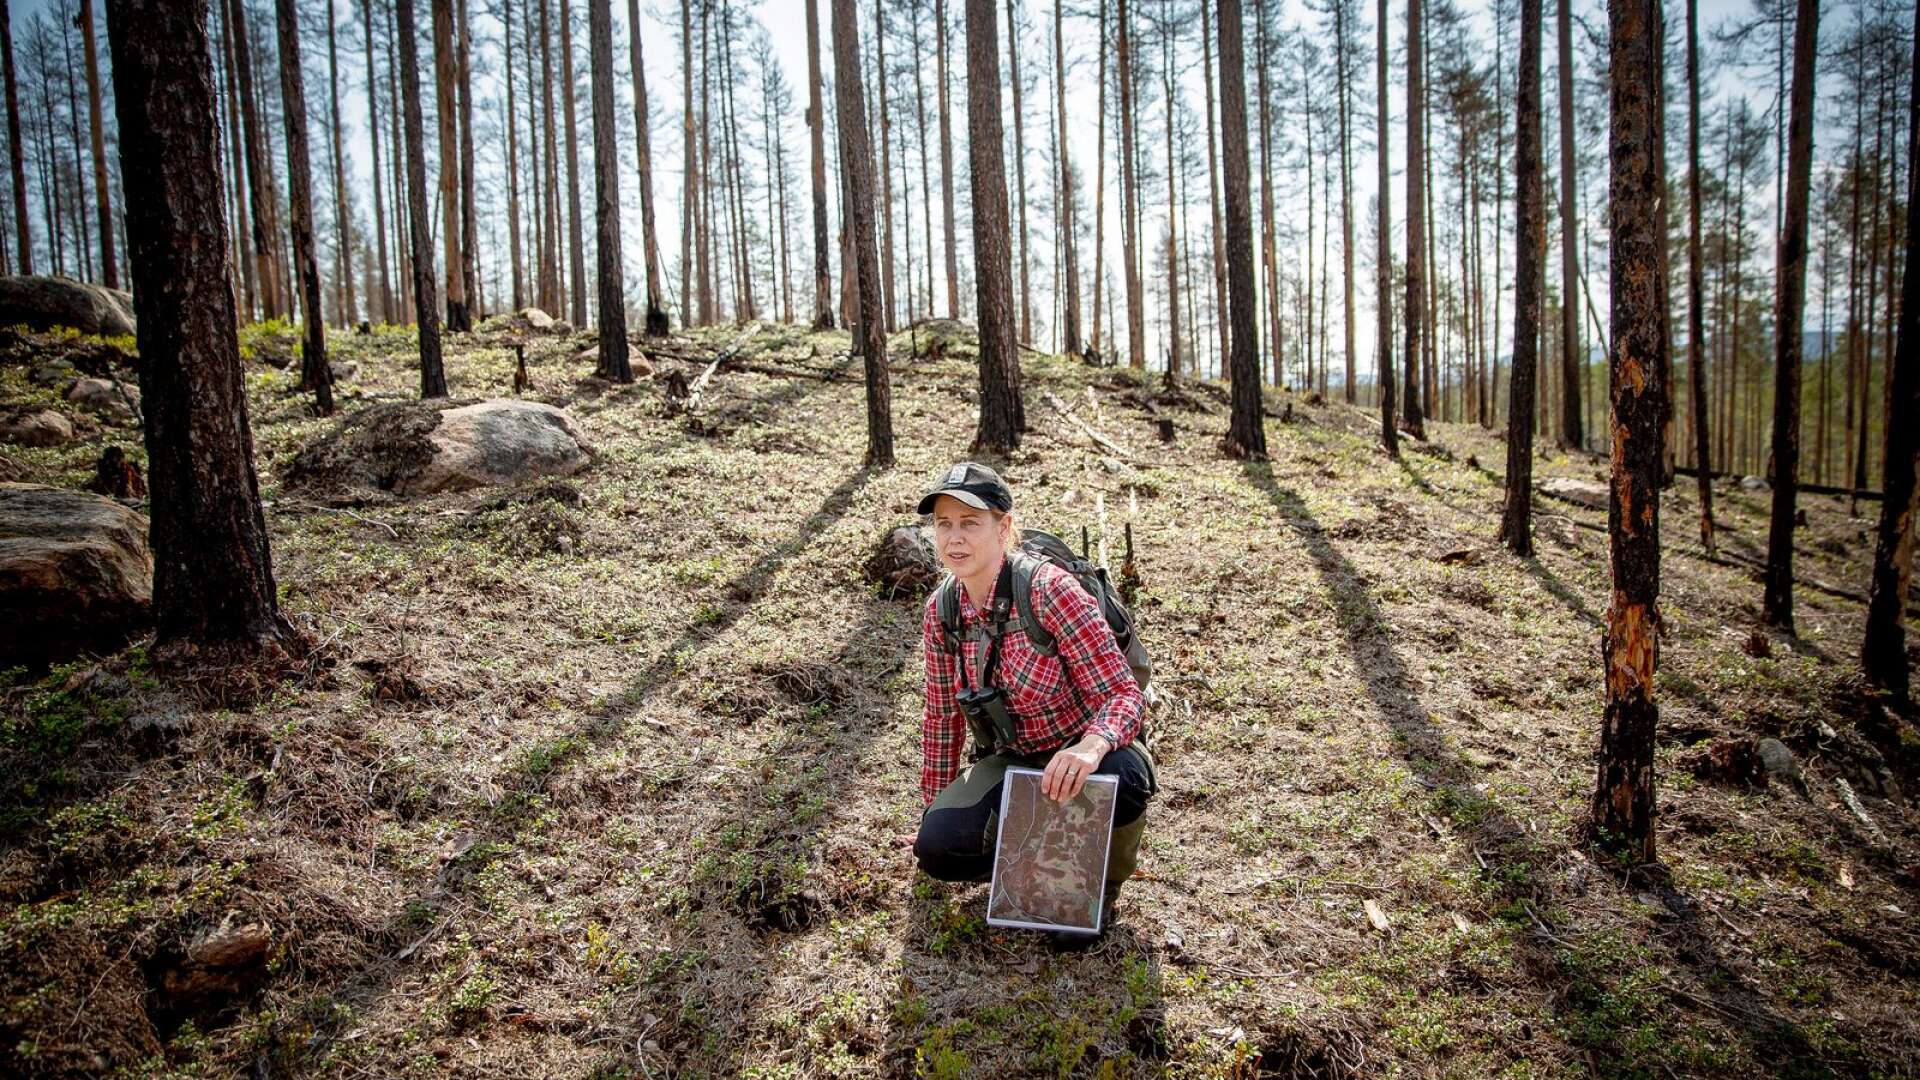 Naturvårdsbrännan vid Västersjön i närheten av Höljes är på gång att bli nytt naturreservat, berättar Jenny Sander, länsstyrelsens projektledare för EU-projektet Life Taiga.